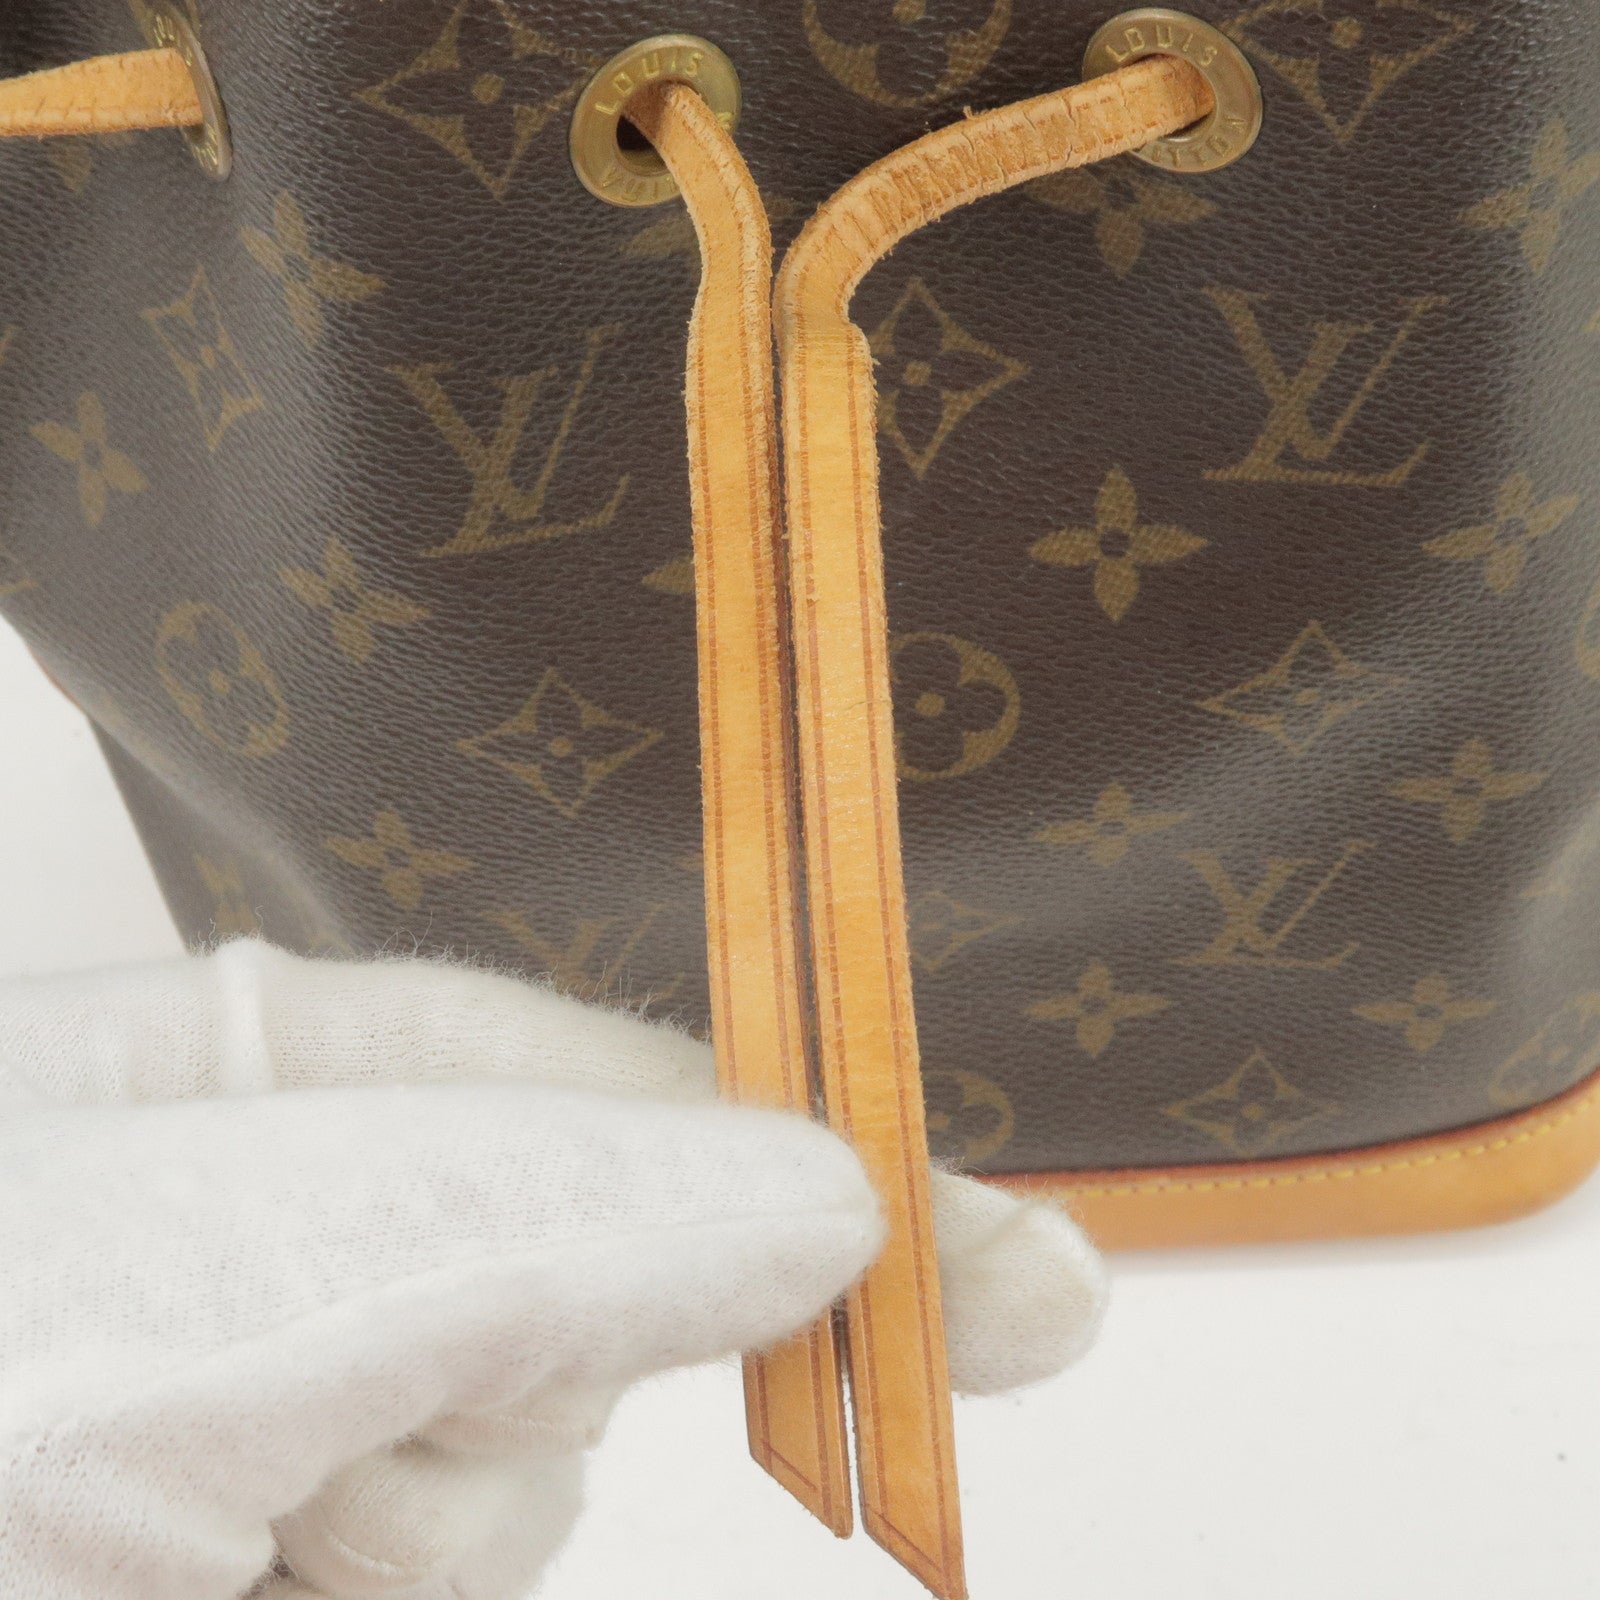 SALE! Authentic Louis Vuitton Damier Azur Noe PM , Women's Fashion